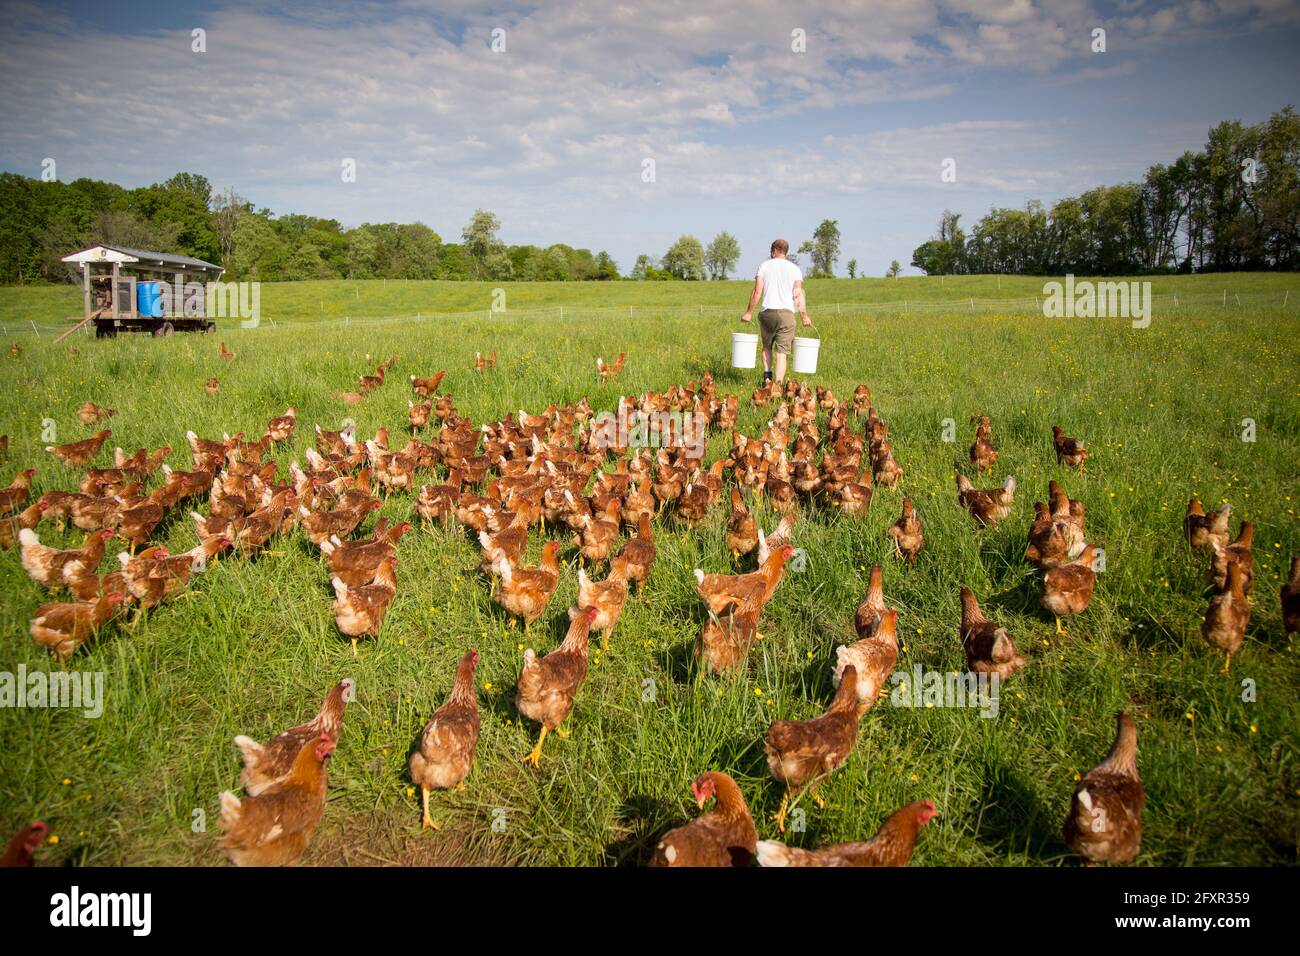 Un agriculteur se préparant à nourrir son troupeau de poulets de liberté à Rockland Farm près de Seneca, Maryland, États-Unis d'Amérique, Amérique du Nord Banque D'Images